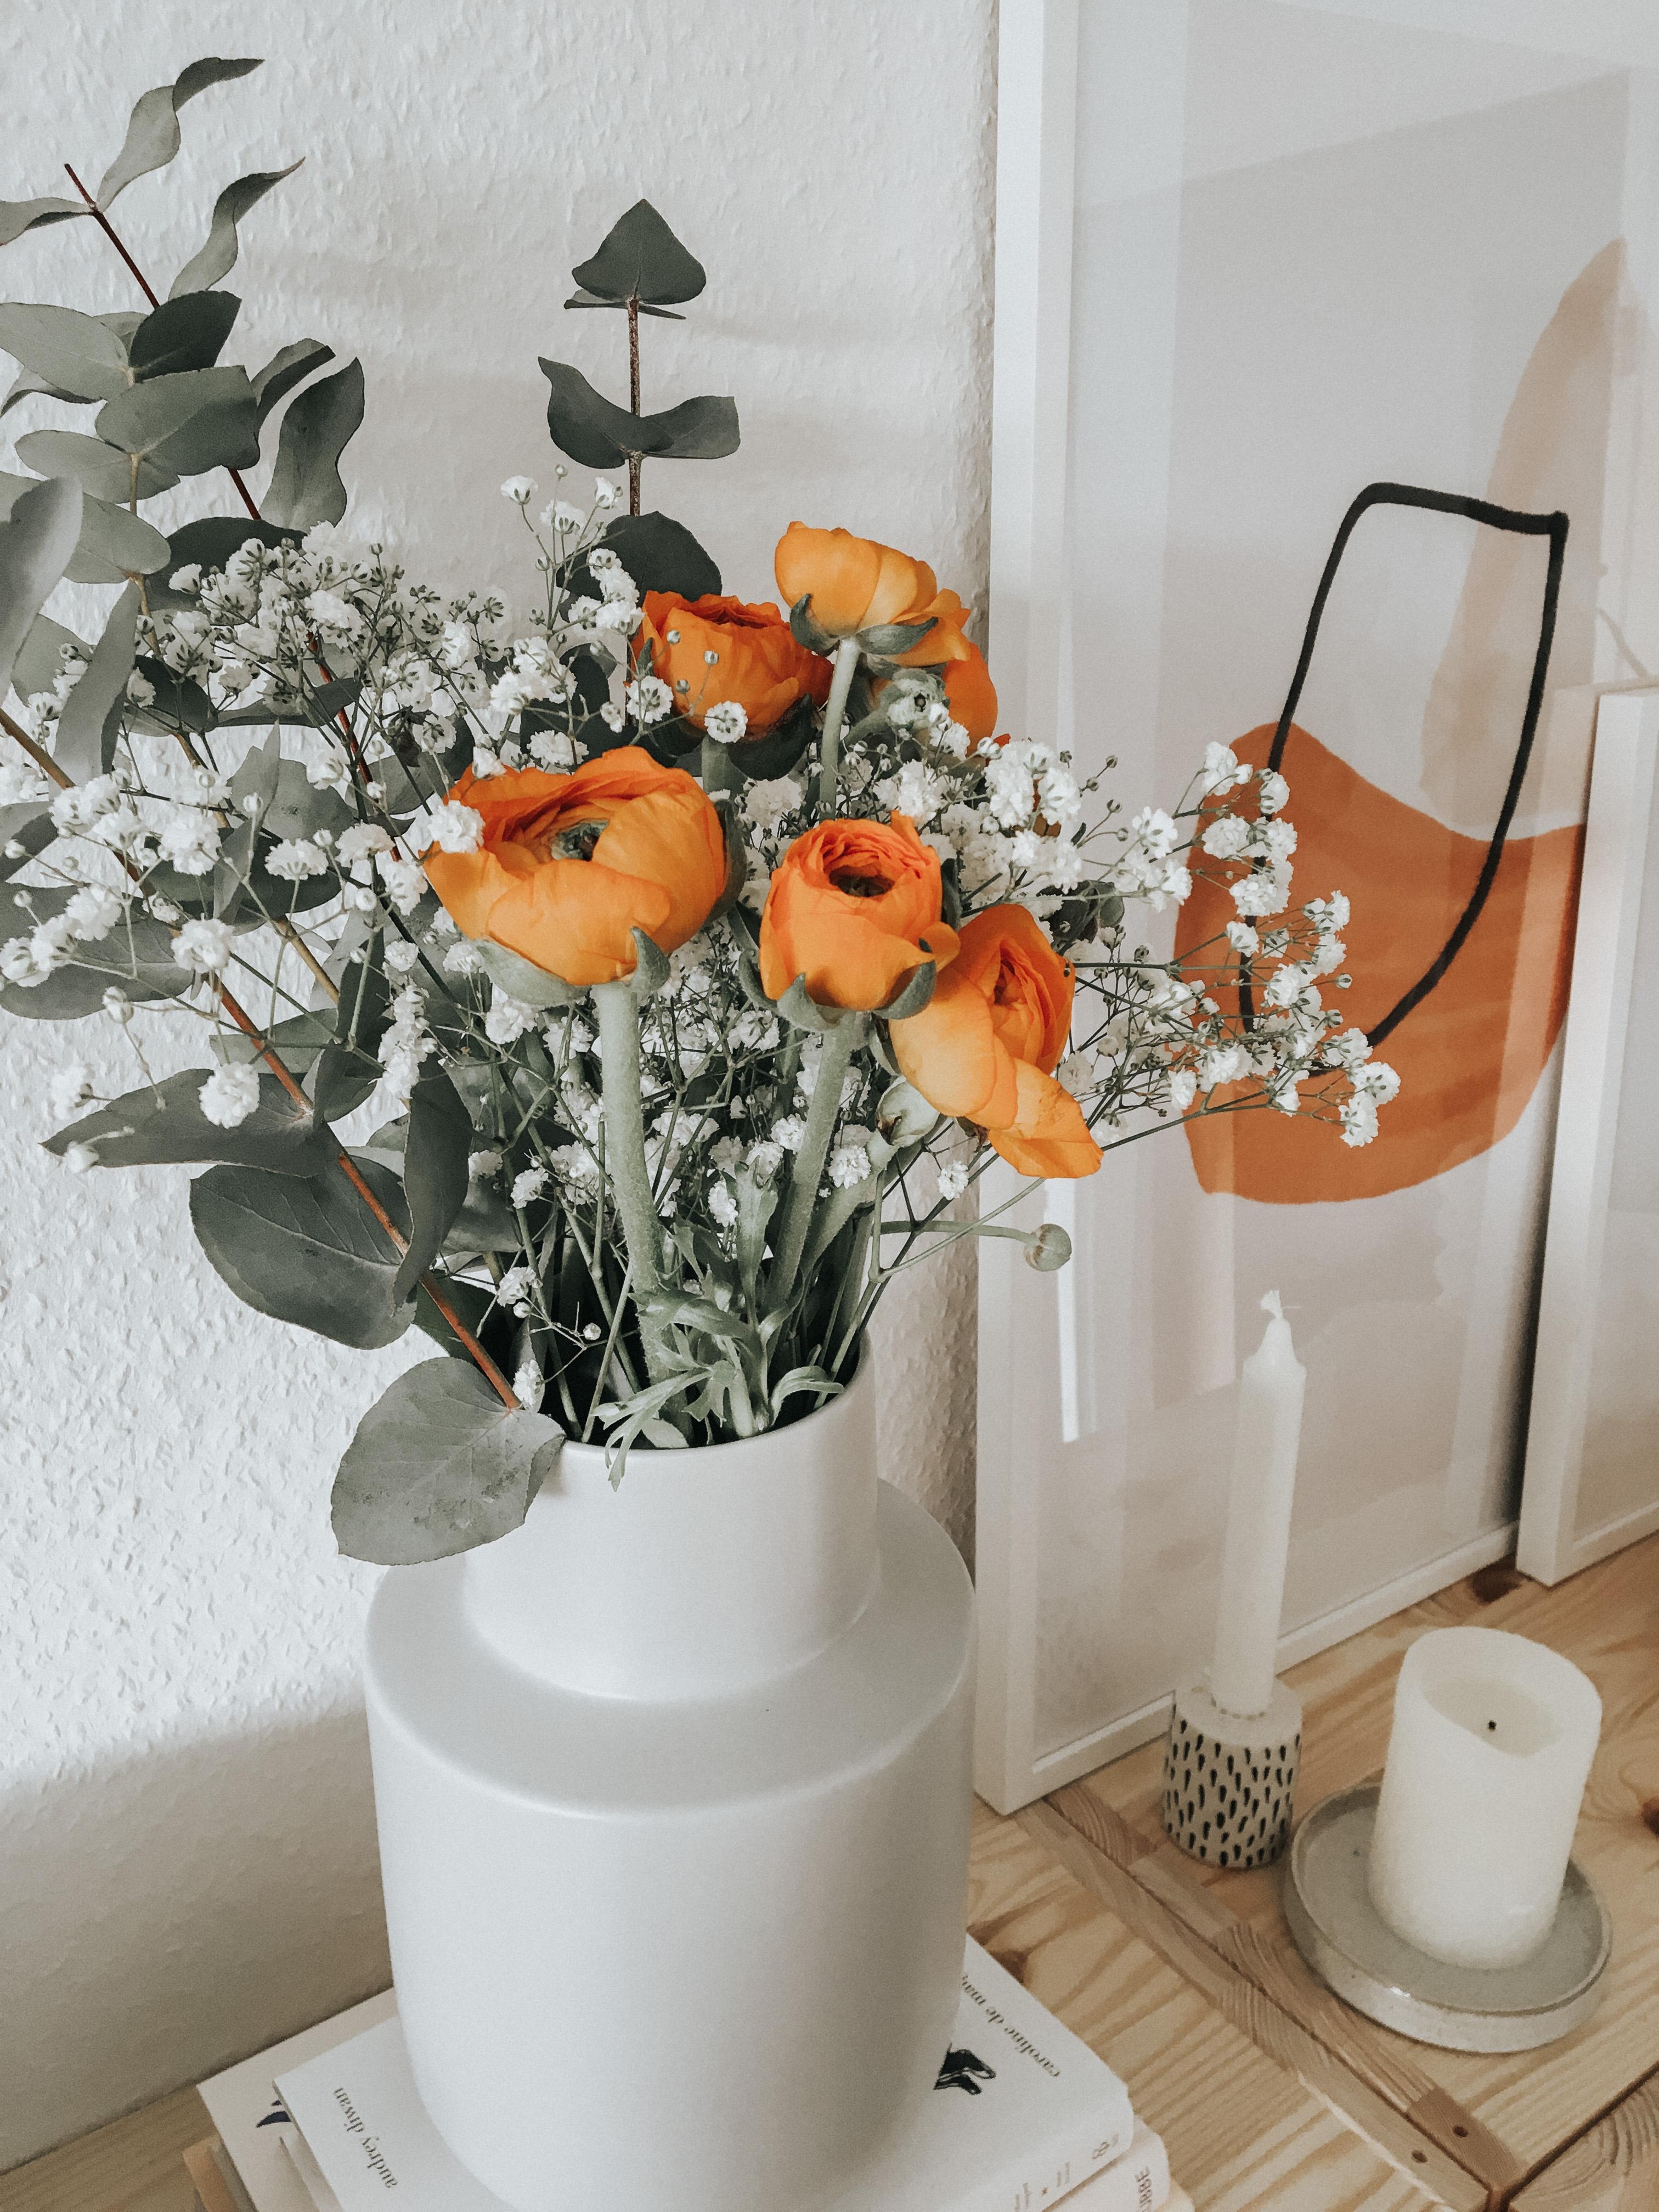 Flowers 🧡
#home #flowers #details #livingroom #orange #hygge #couchstye #weekend 